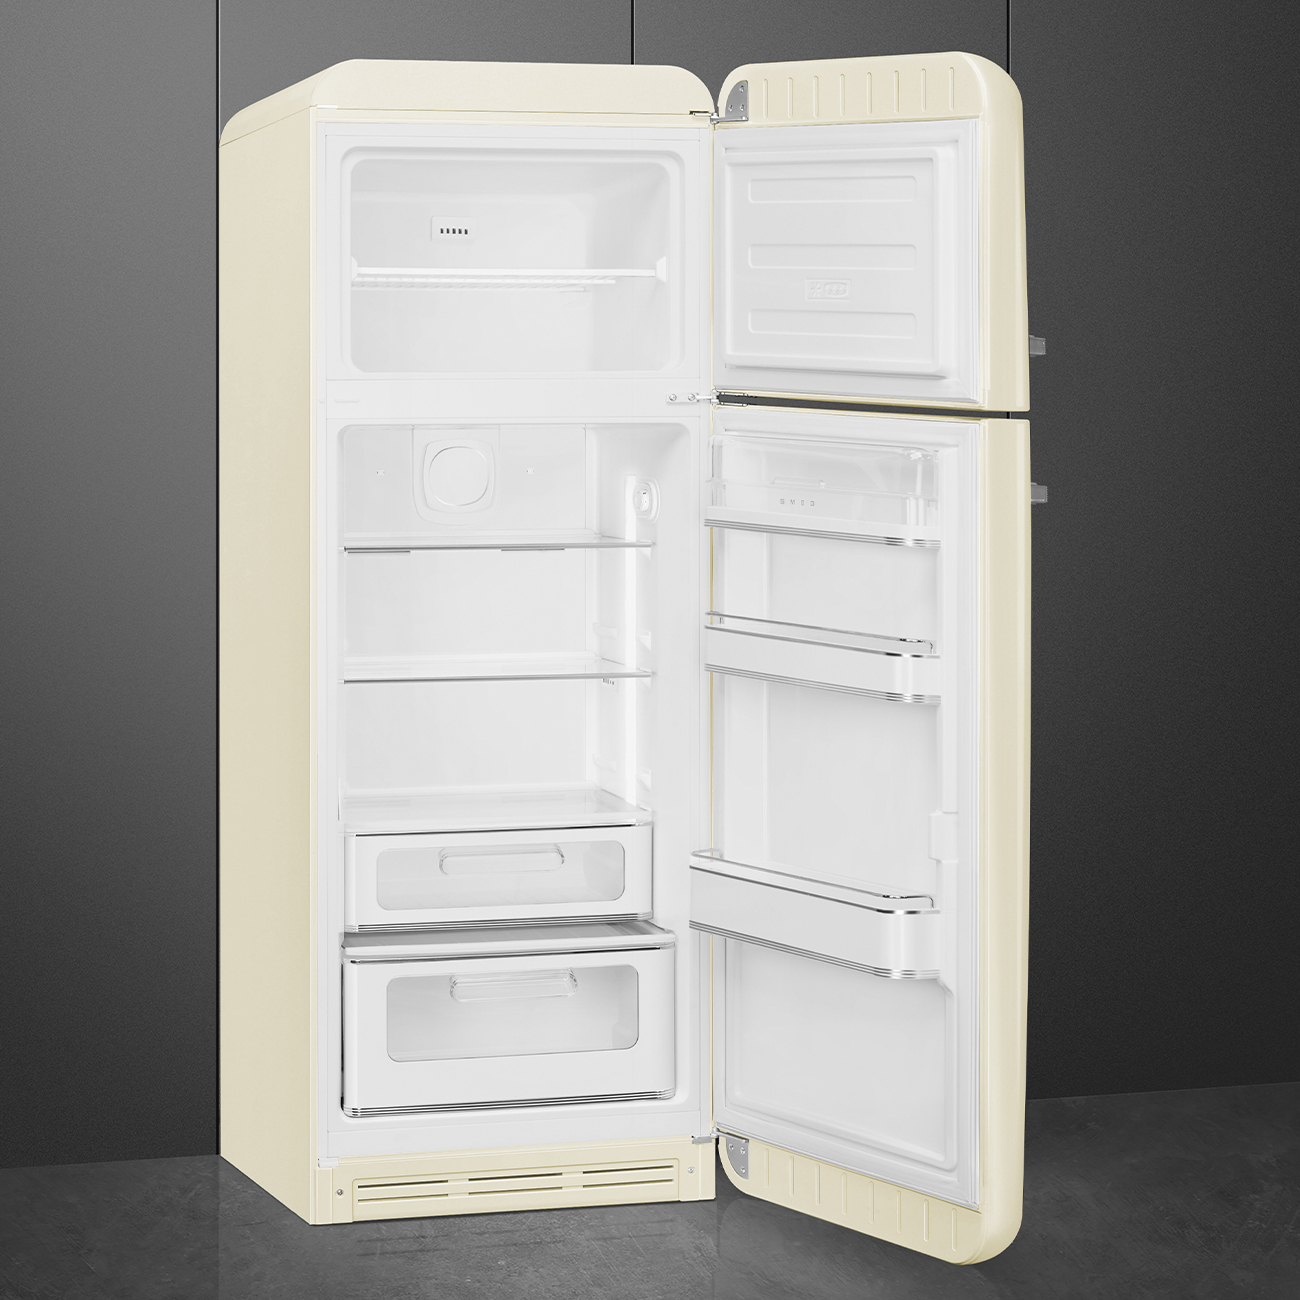 Creme Retro-Kühlschränke von Smeg_2